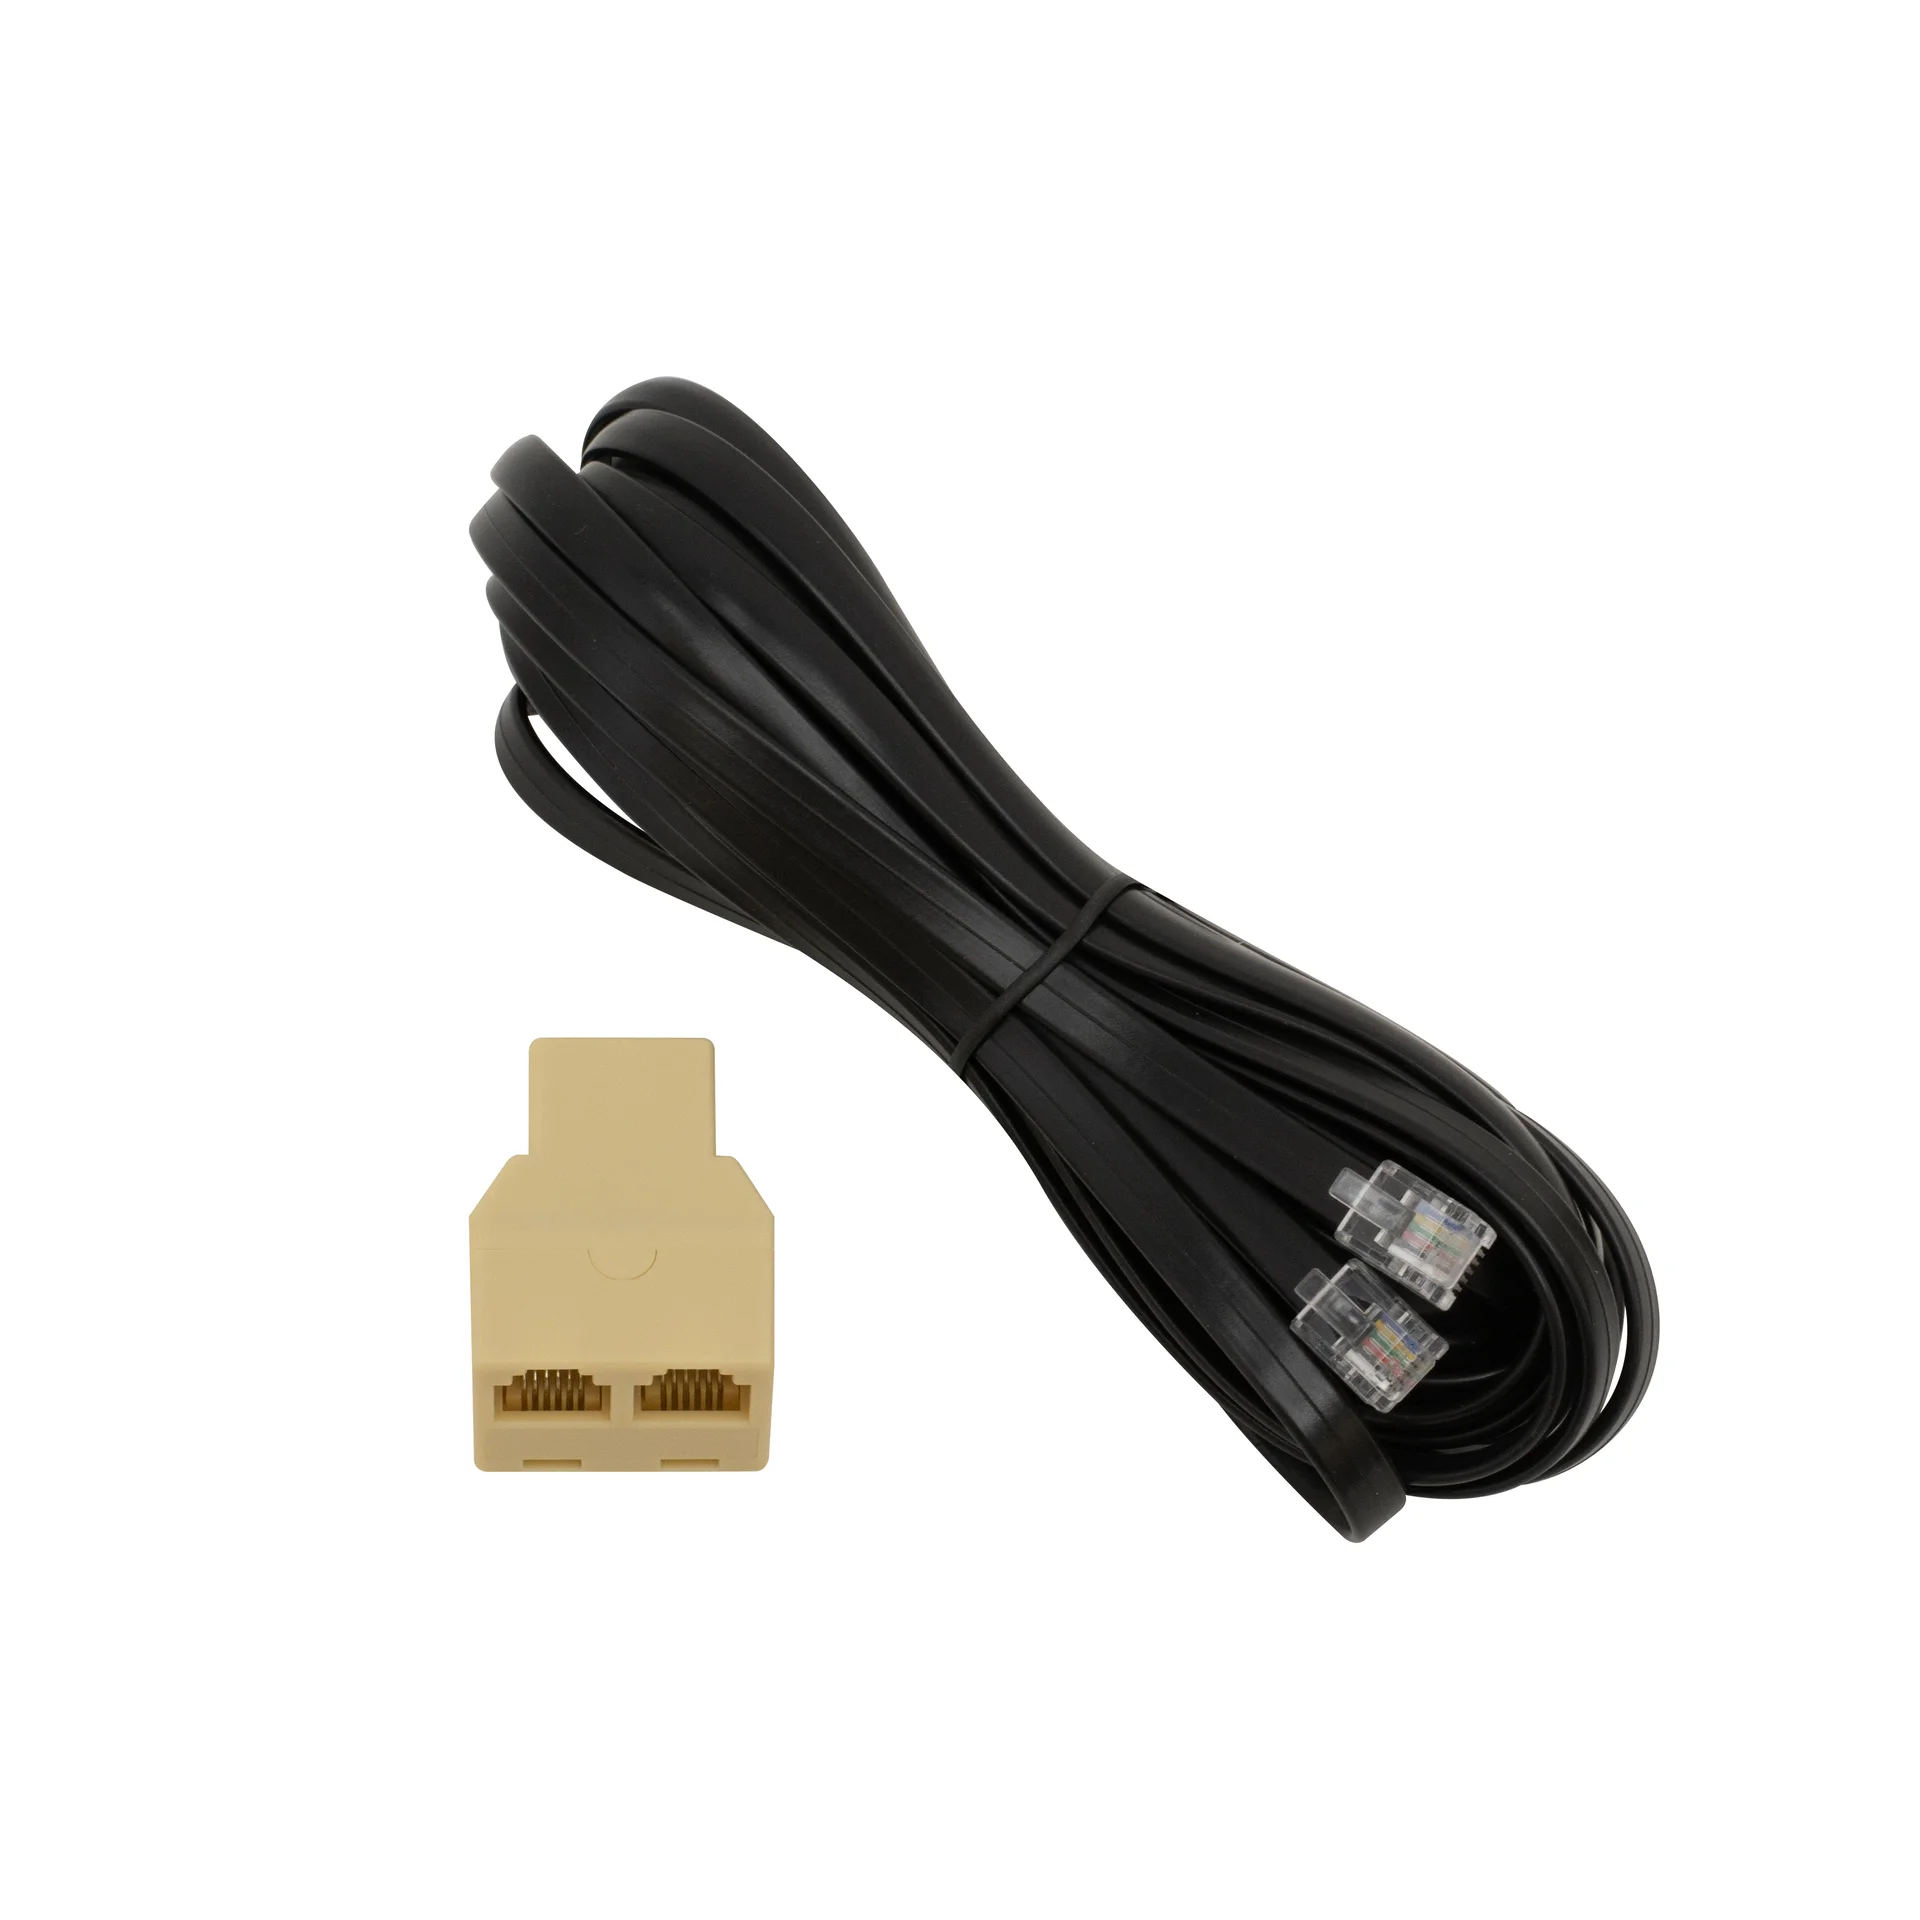 snr-cable-1wire-5m - Удлинитель каберя для 1-wire датчиков. Позволяет удлинить шлейф 1-wire датчика и подключить два 1-wire датчика к одному удлинителю. купить в Казани 	Удлинитель кабеля для датчика 1-wire представляет собой комплект из провода AWG24 (0,2 мм2) с вилка